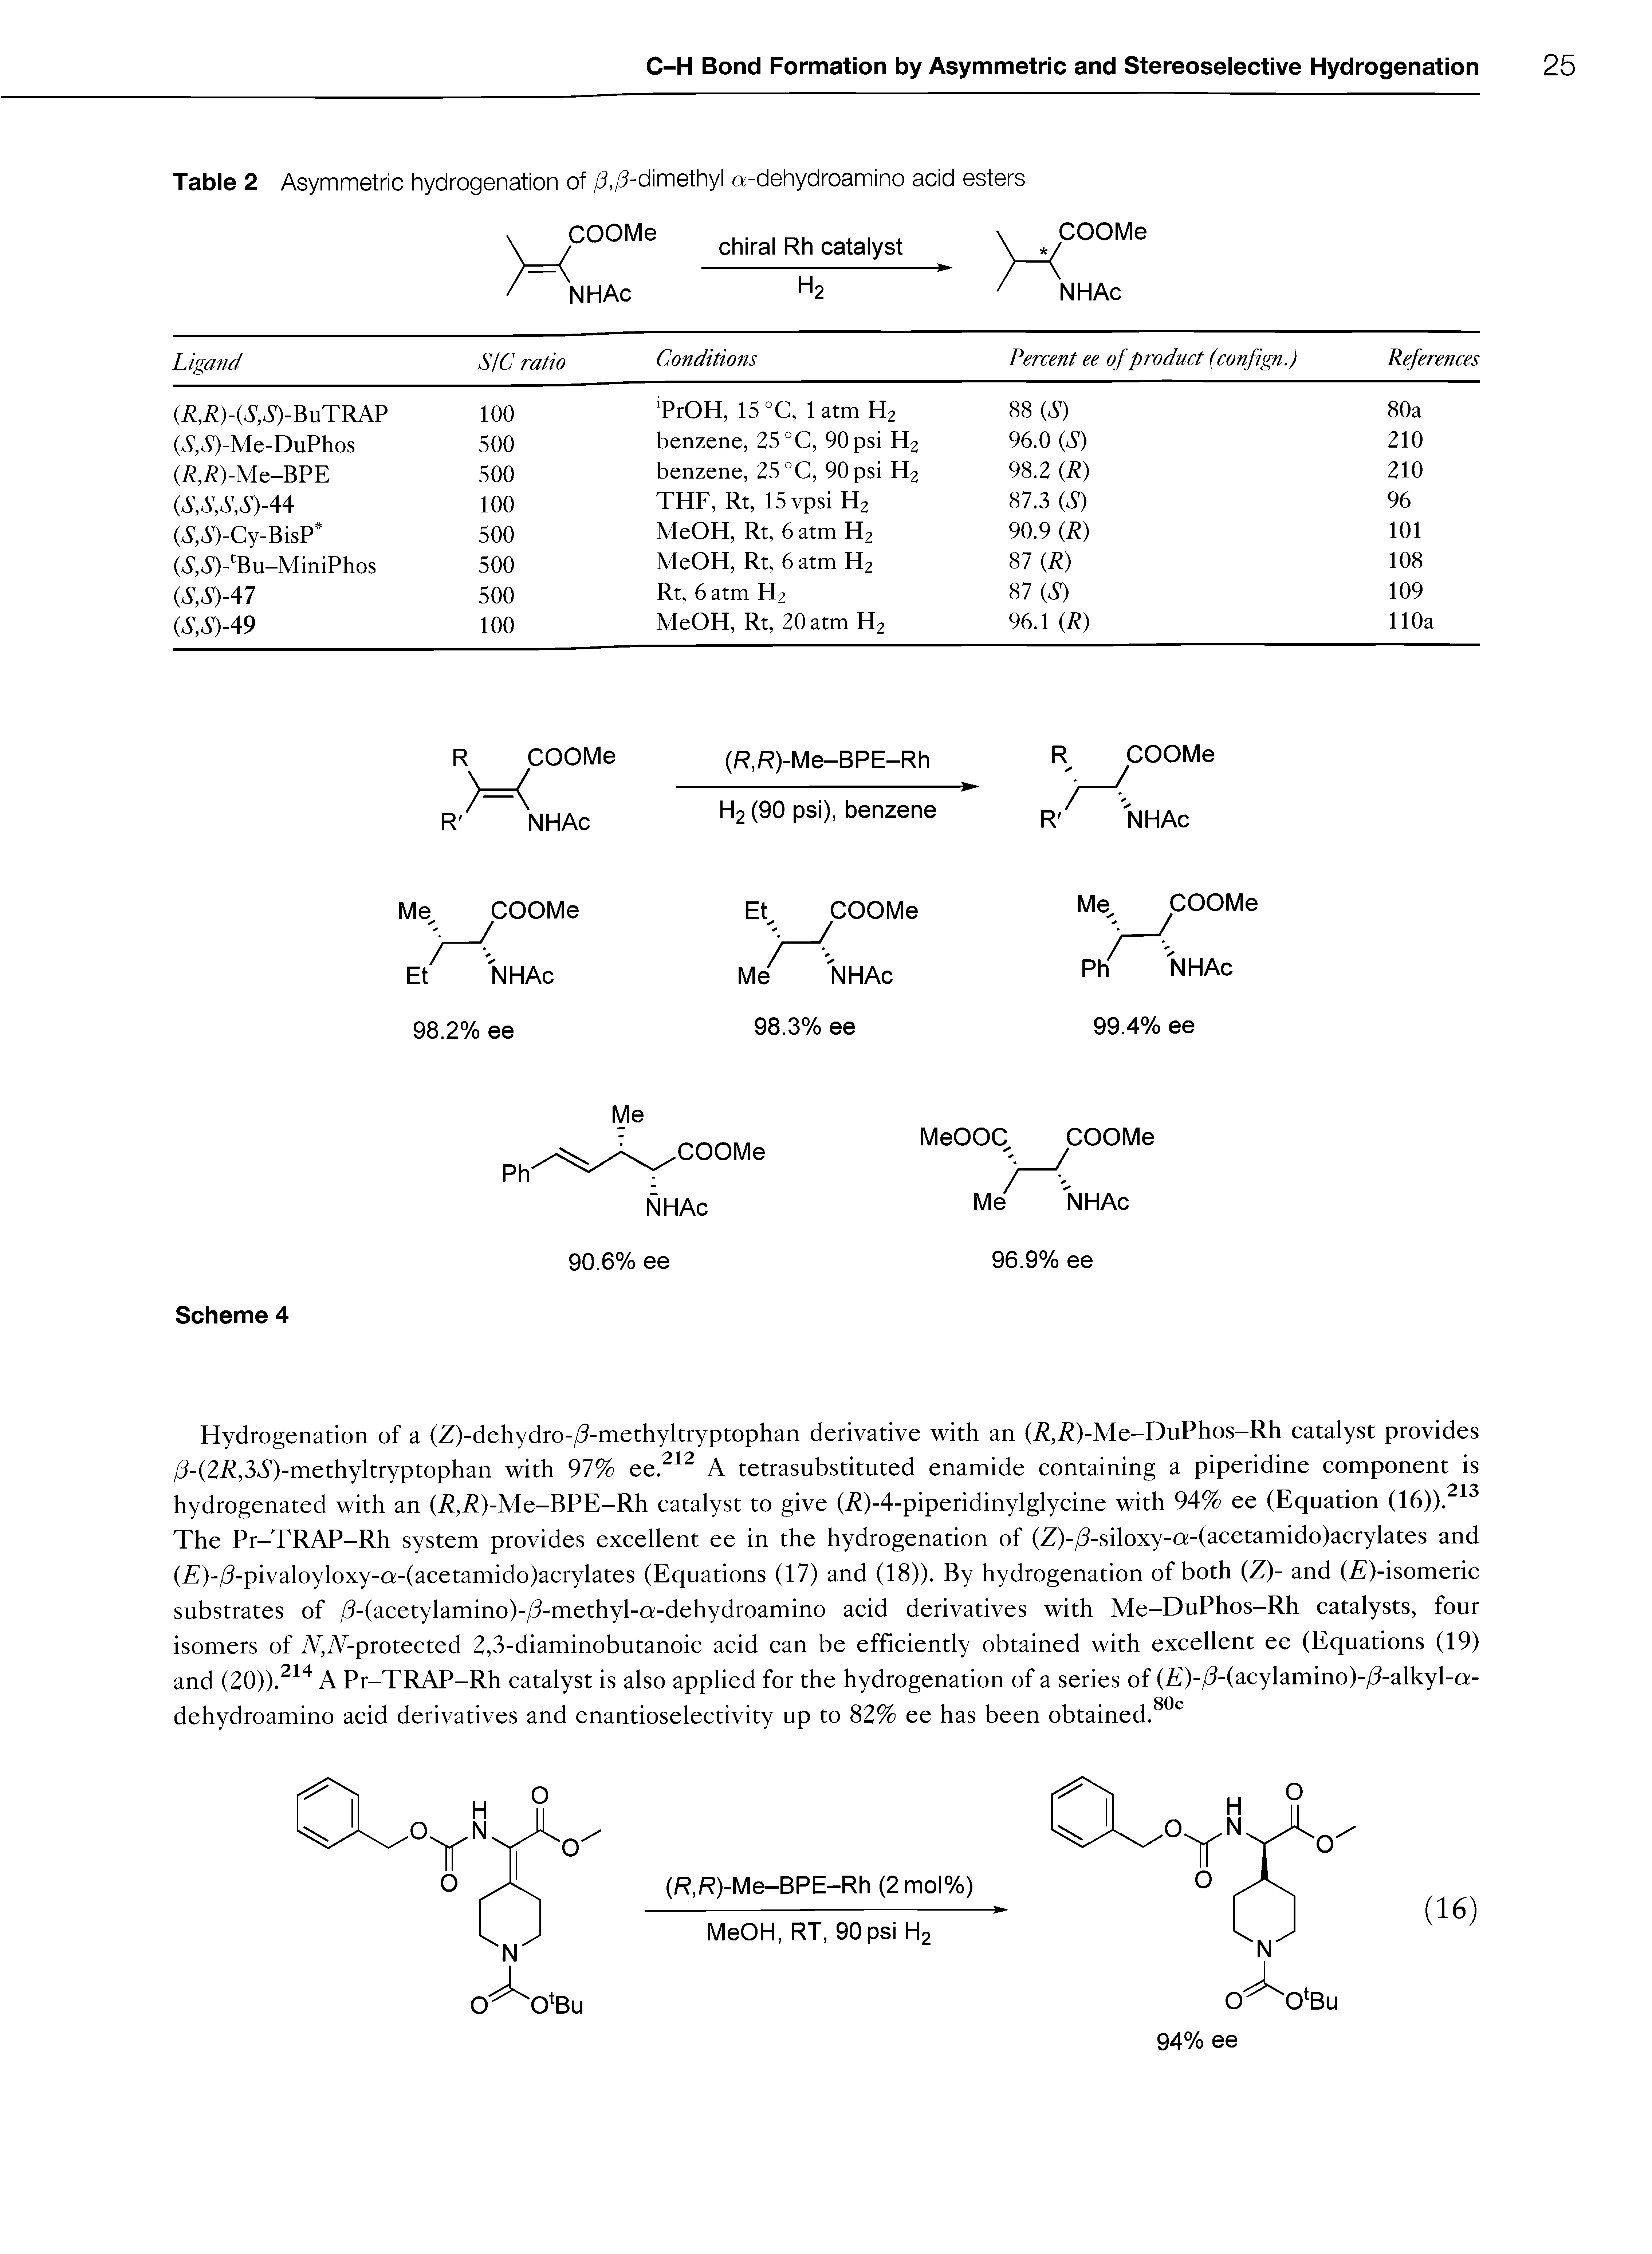 Table 2 Asymmetric hydrogenation of / ,/3-dimethyl a-dehydroamino acid esters...